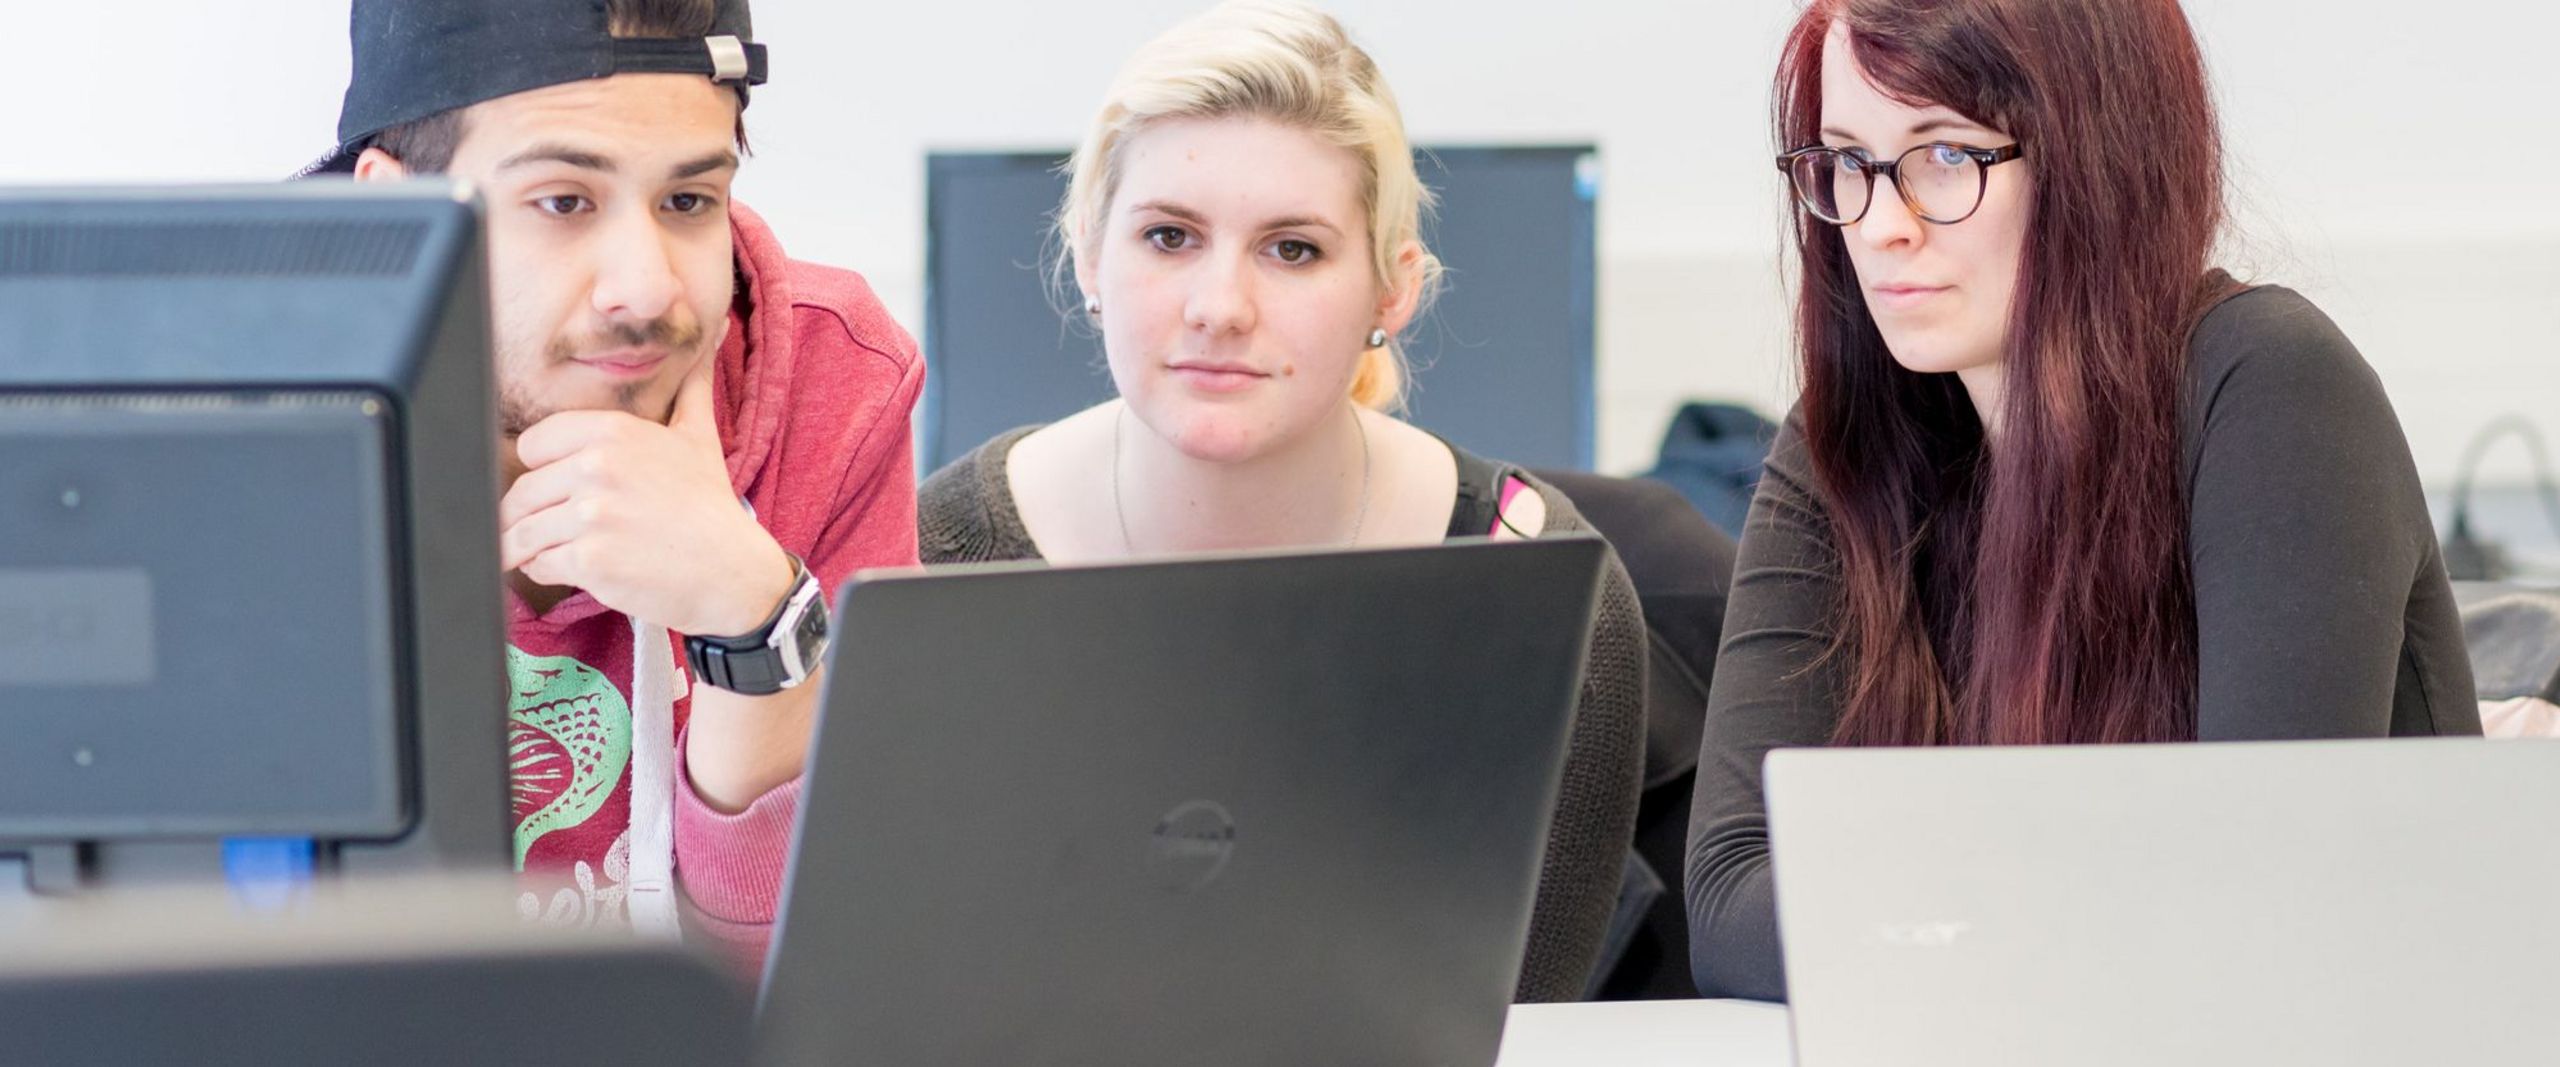 Drei Studierende blicken gemeinsam auf einen Laptop.